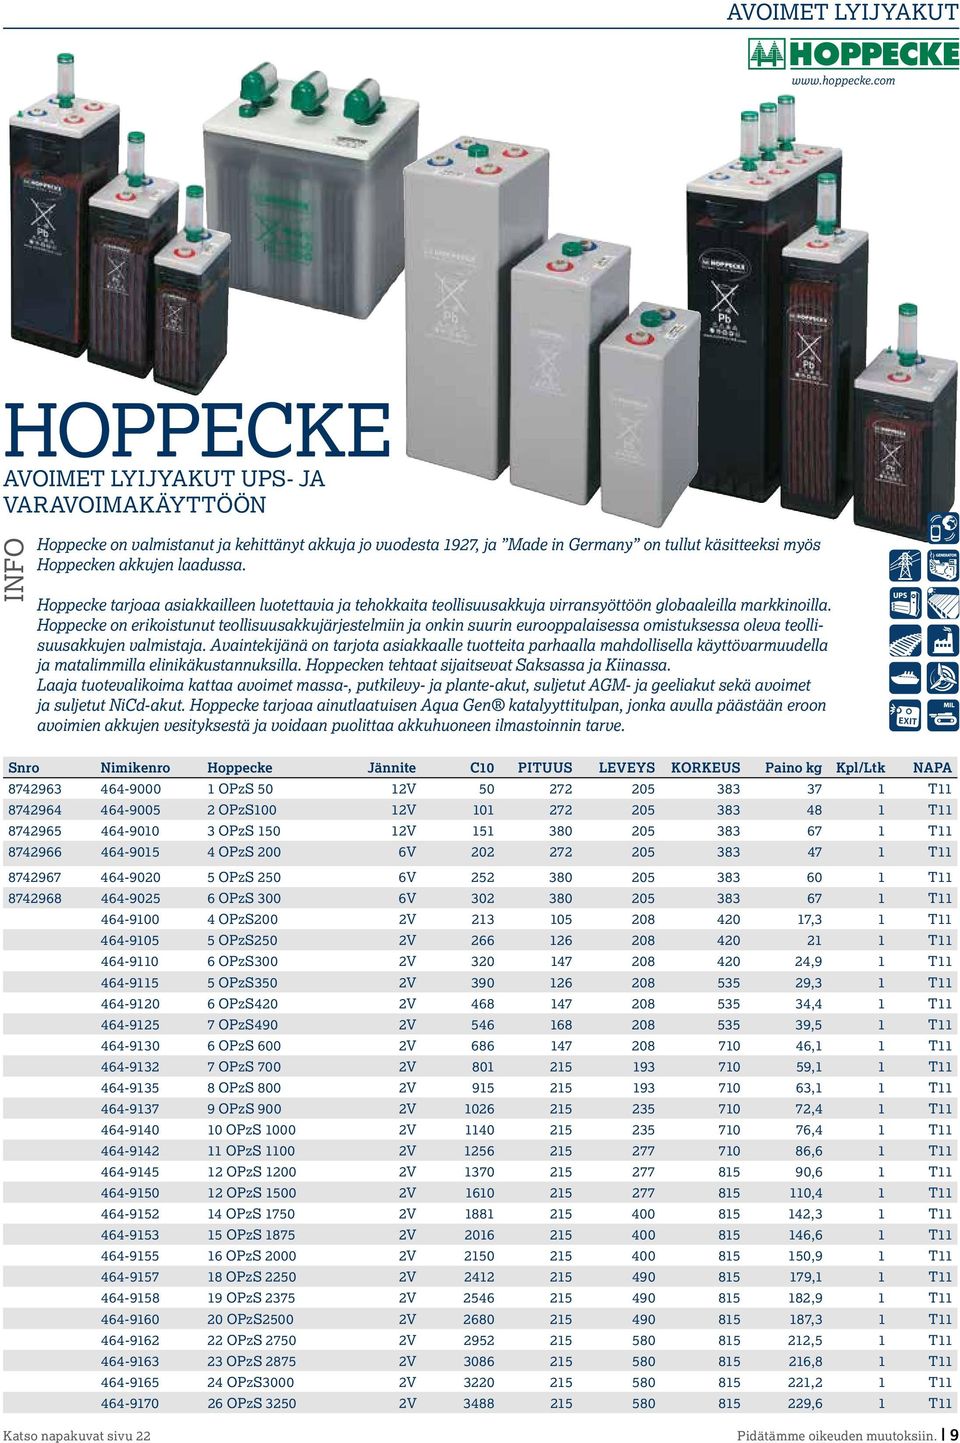 Hoppecke tarjoaa asiakkailleen luotettavia ja tehokkaita teollisuusakkuja virransyöttöön globaaleilla markkinoilla.